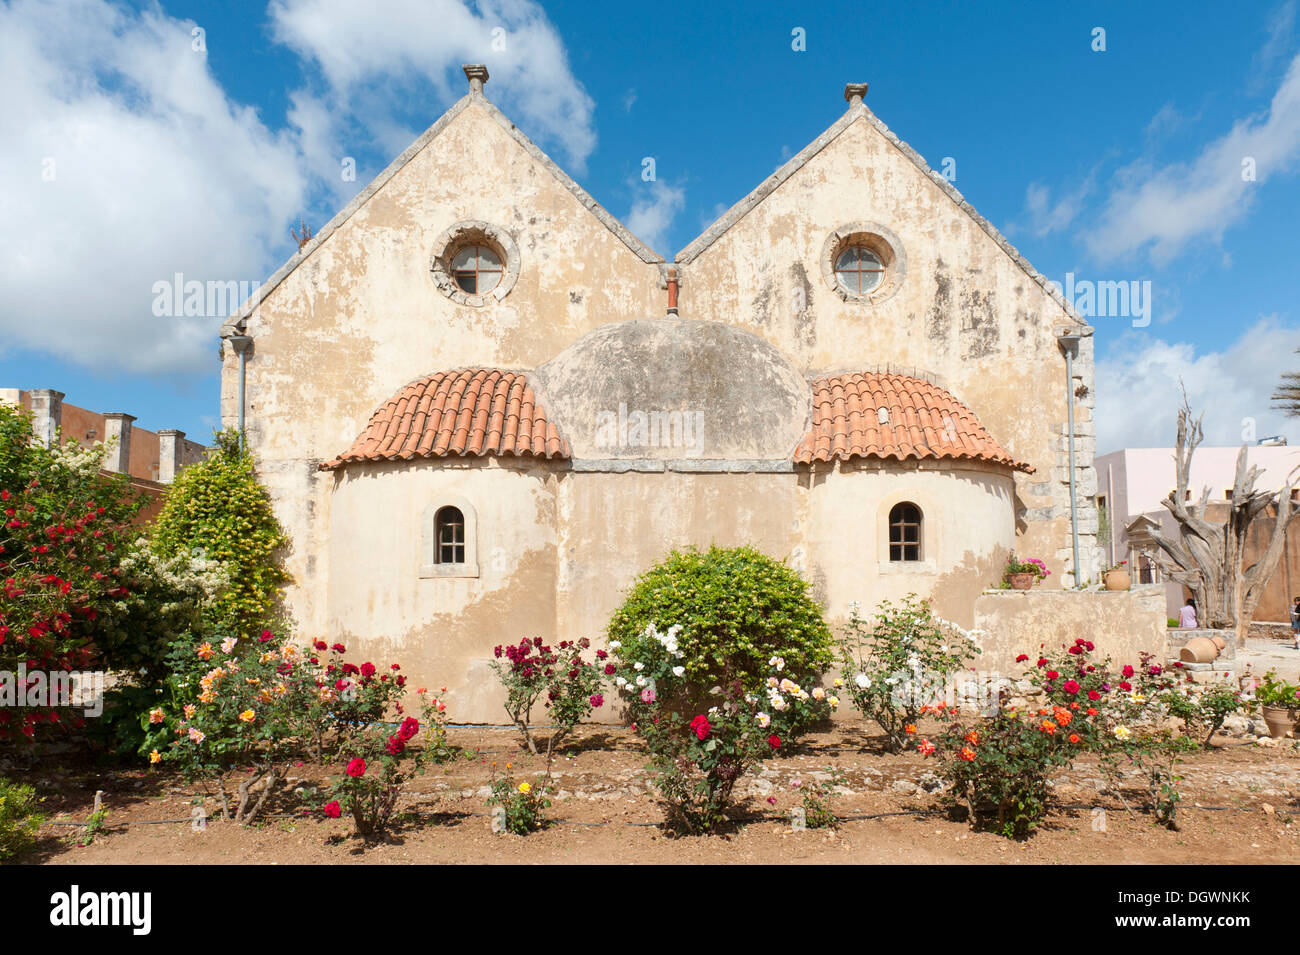 Iglesia Ortodoxa Griega con dos naves, vista trasera con jardín de rosas, monumento nacional de Creta, en la lucha por la independencia Foto de stock